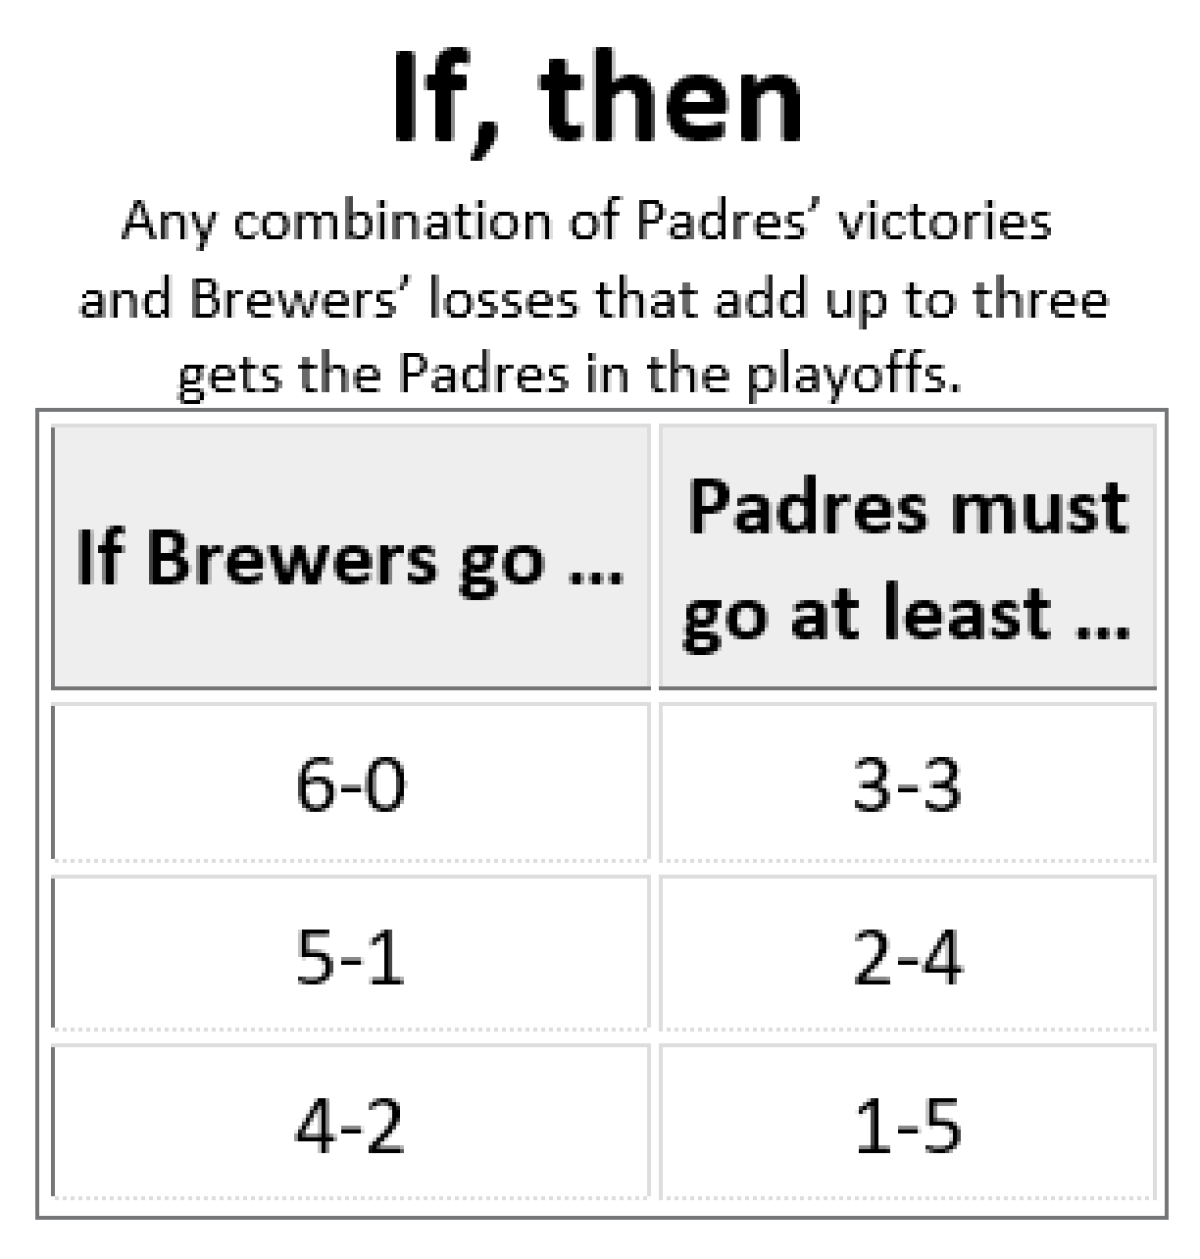 Padres Brewers magic nuber Sept 30